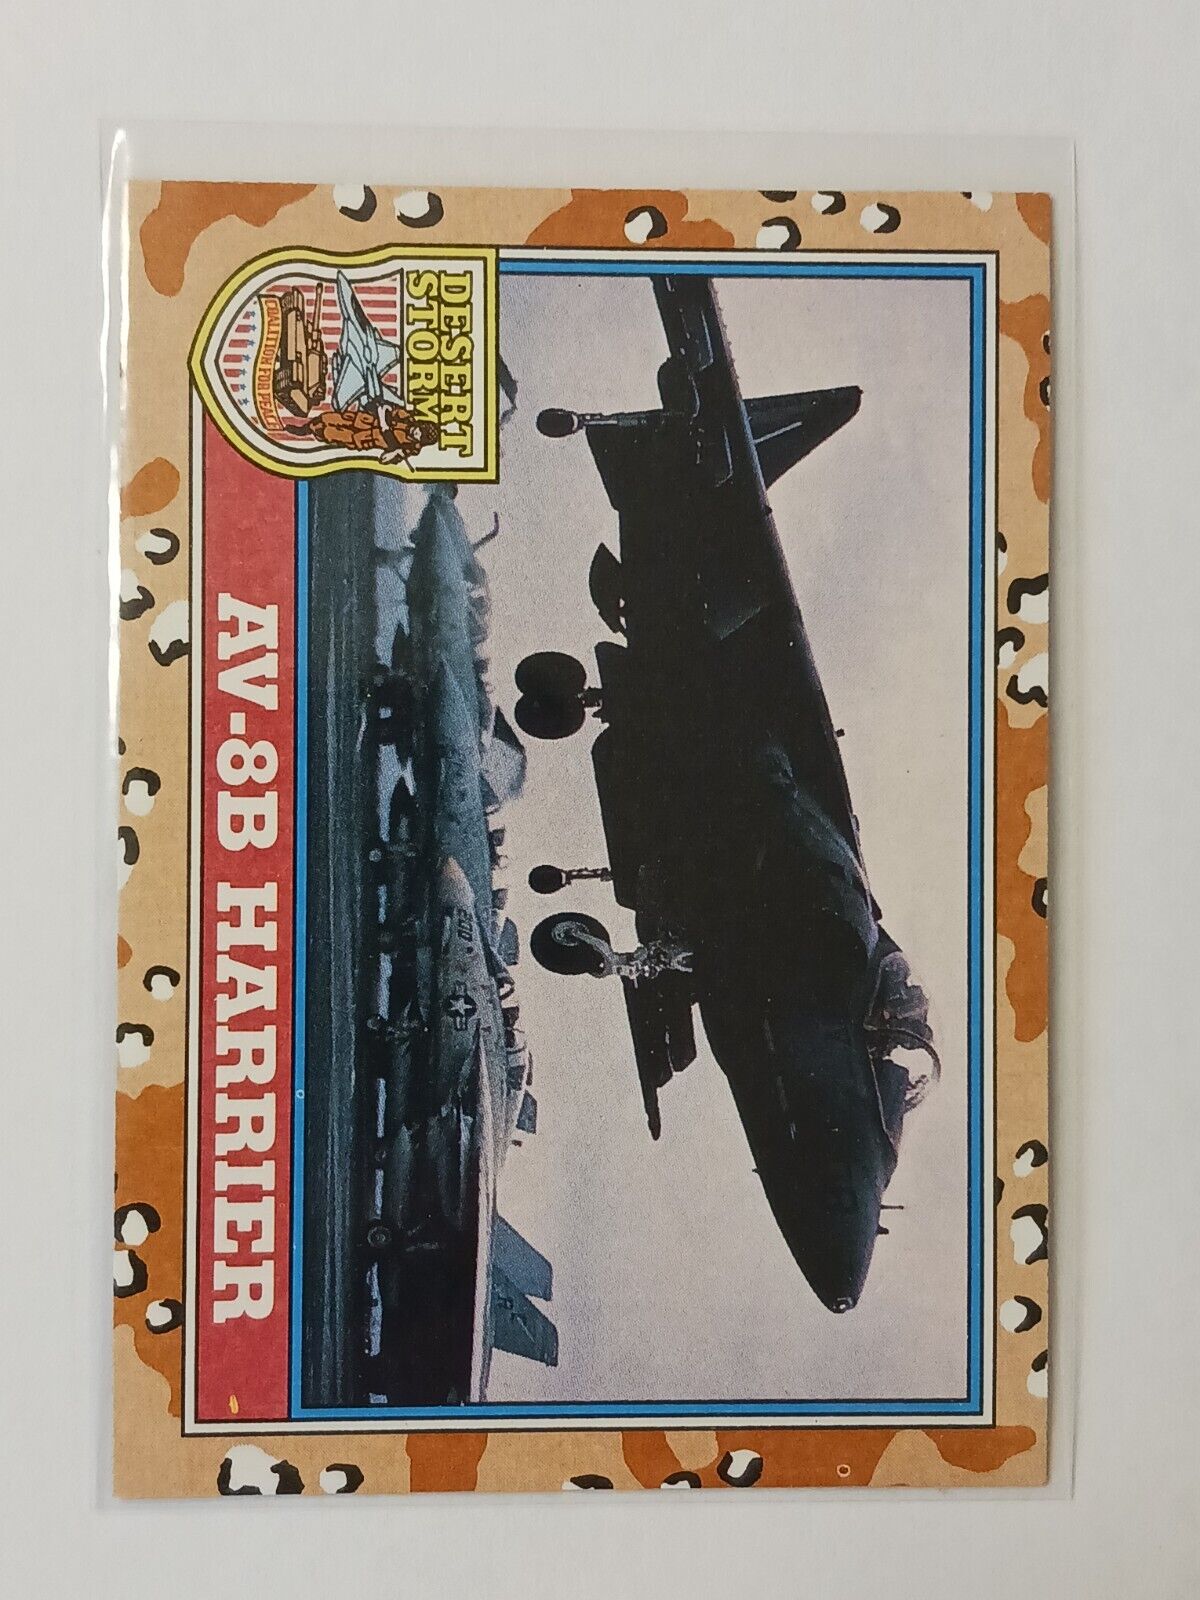 AV-8B HARRIER - 1991 TOPPS DESERT STORM 2nd SERIES CARD #136